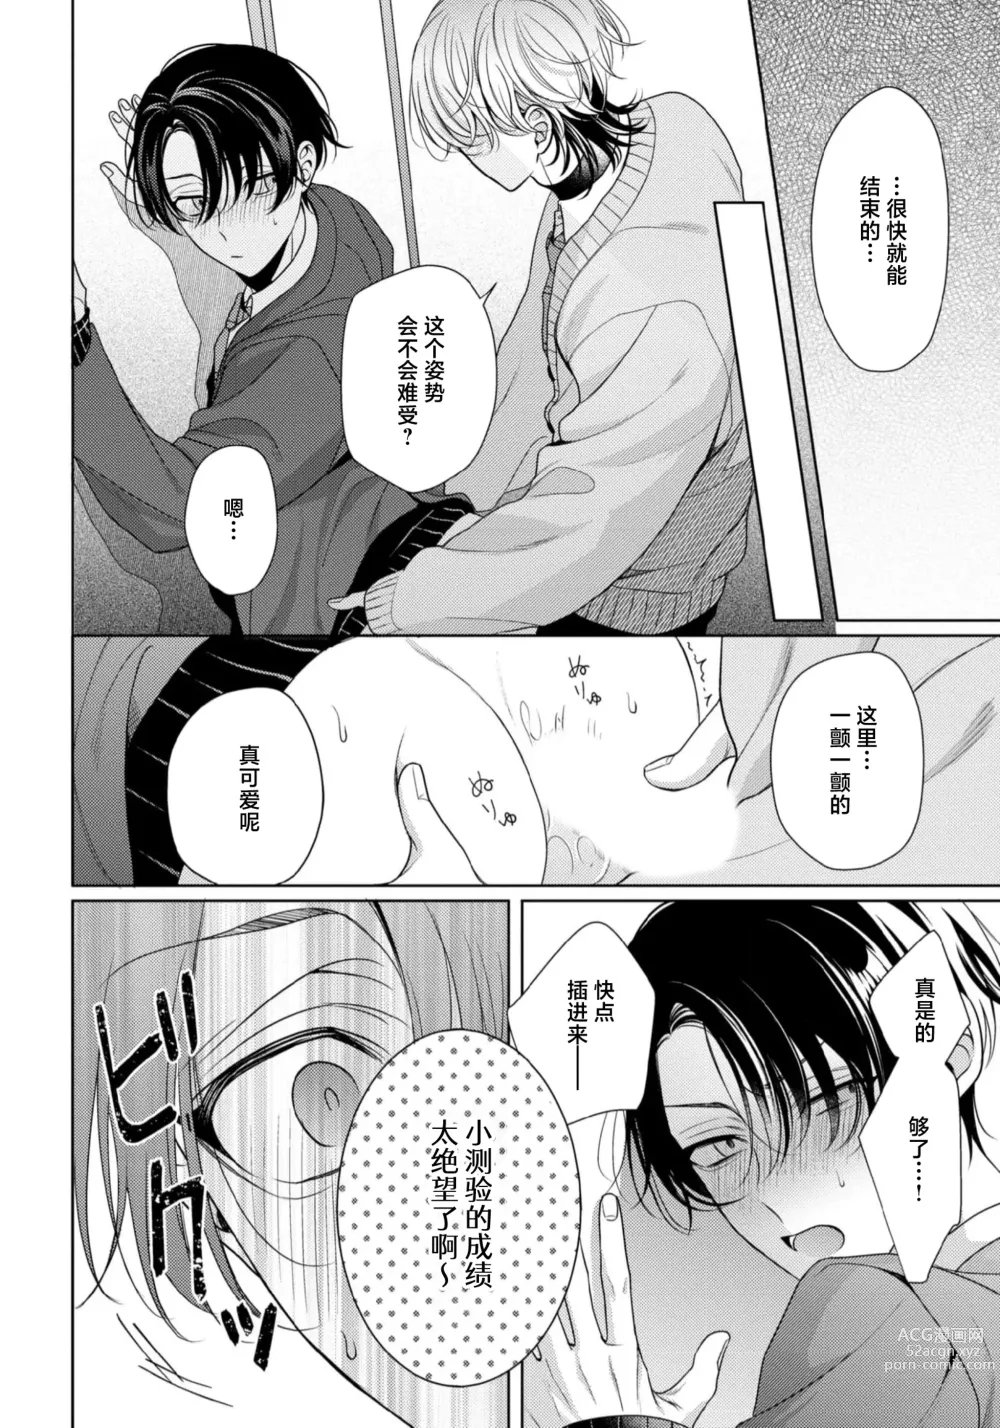 Page 62 of manga 辛辣牛奶糖 1-2